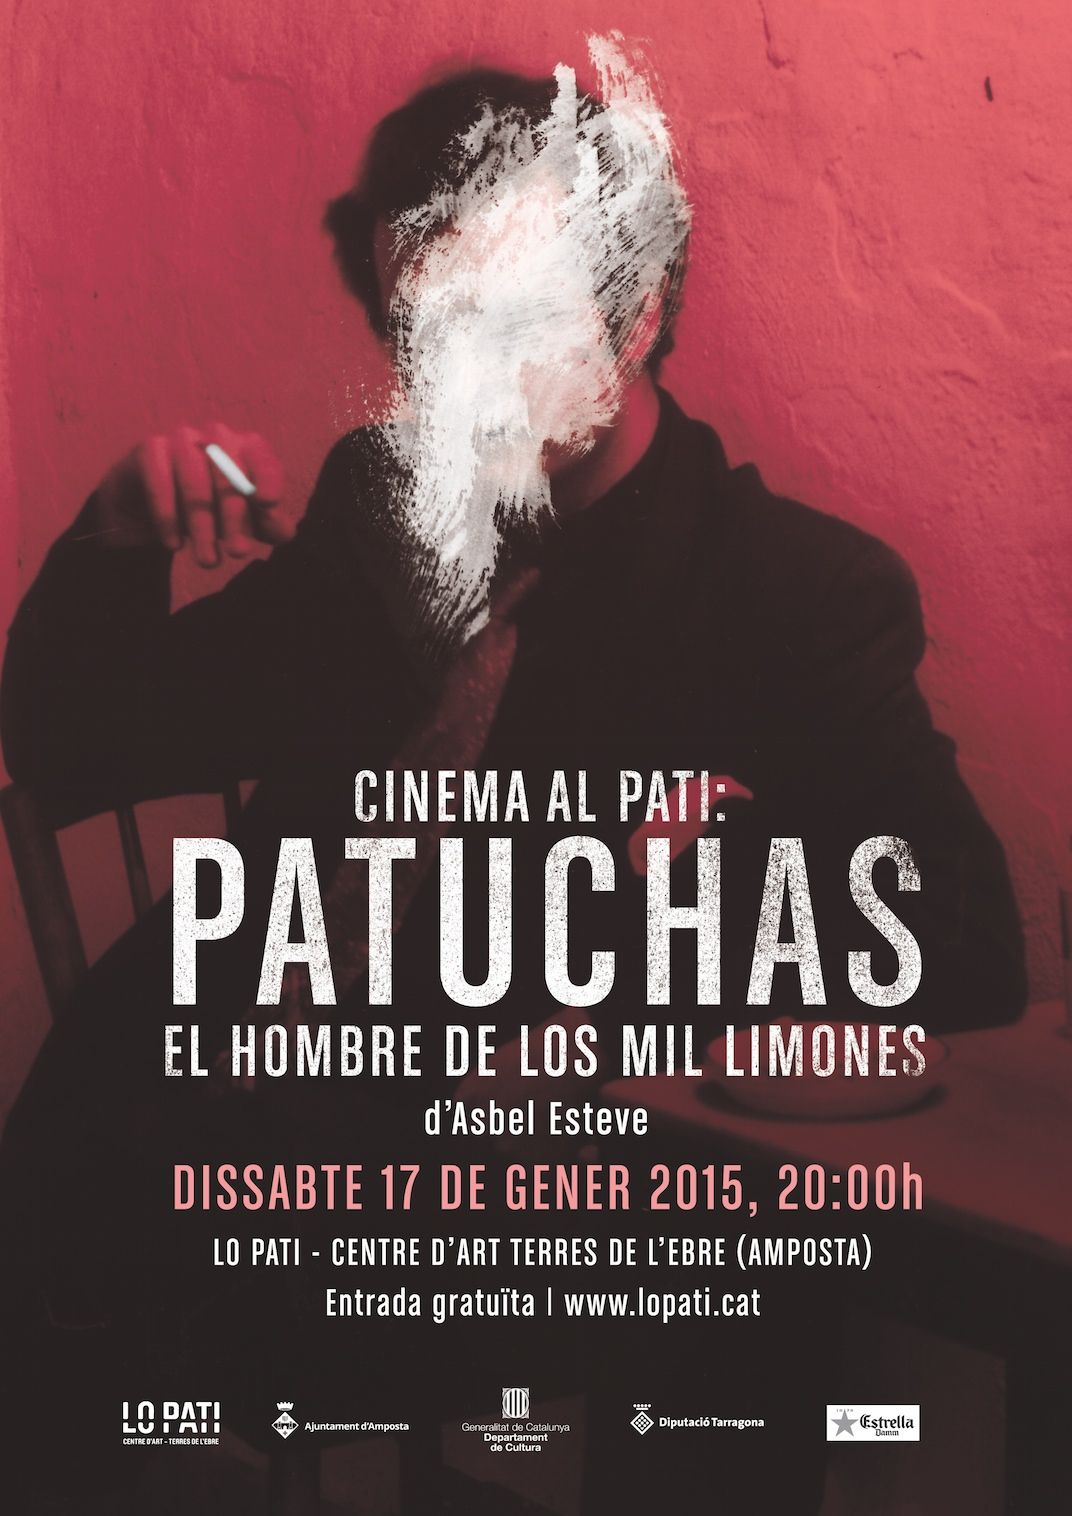 Cinema al Pati: Patuchas, el hombre de los mil limones